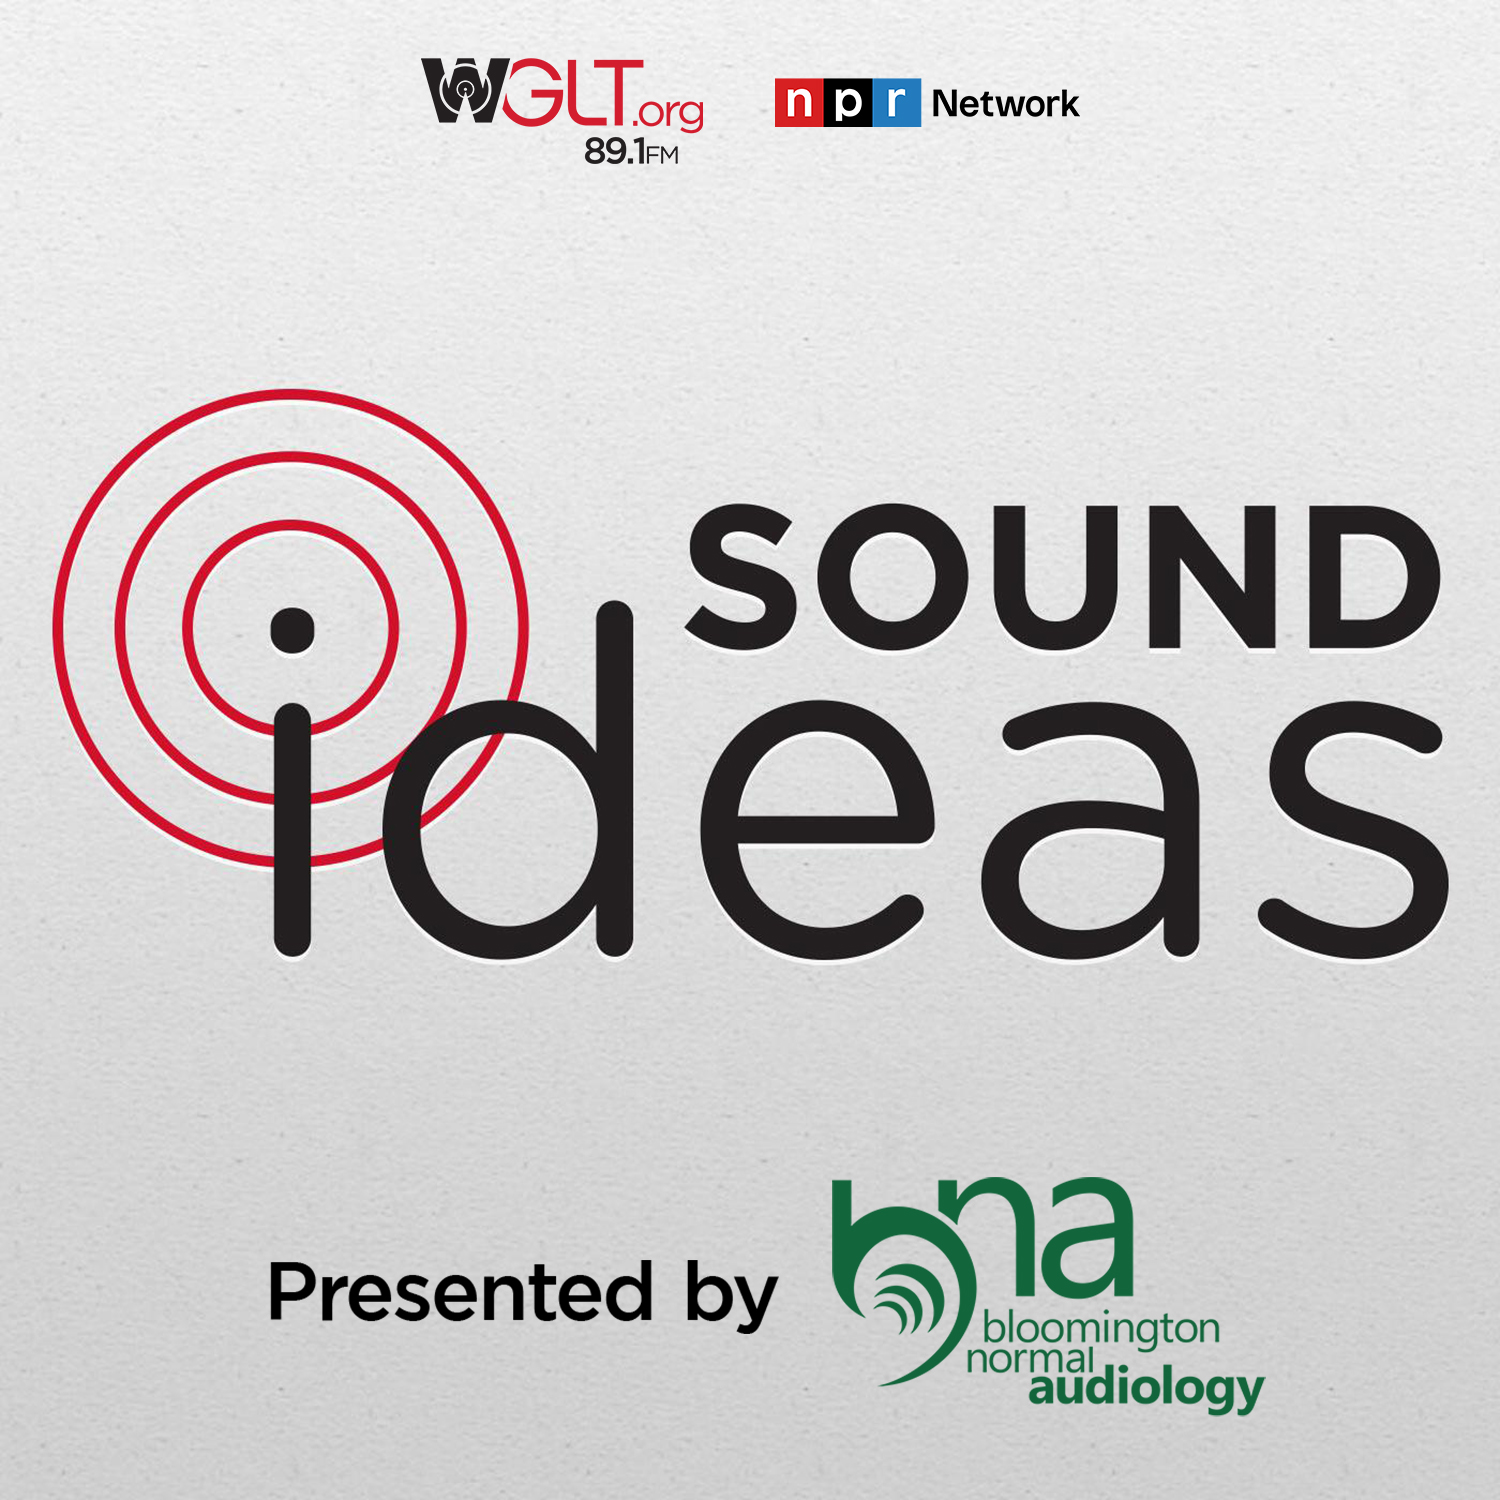 WGLT's Sound Ideas - Full Episodes